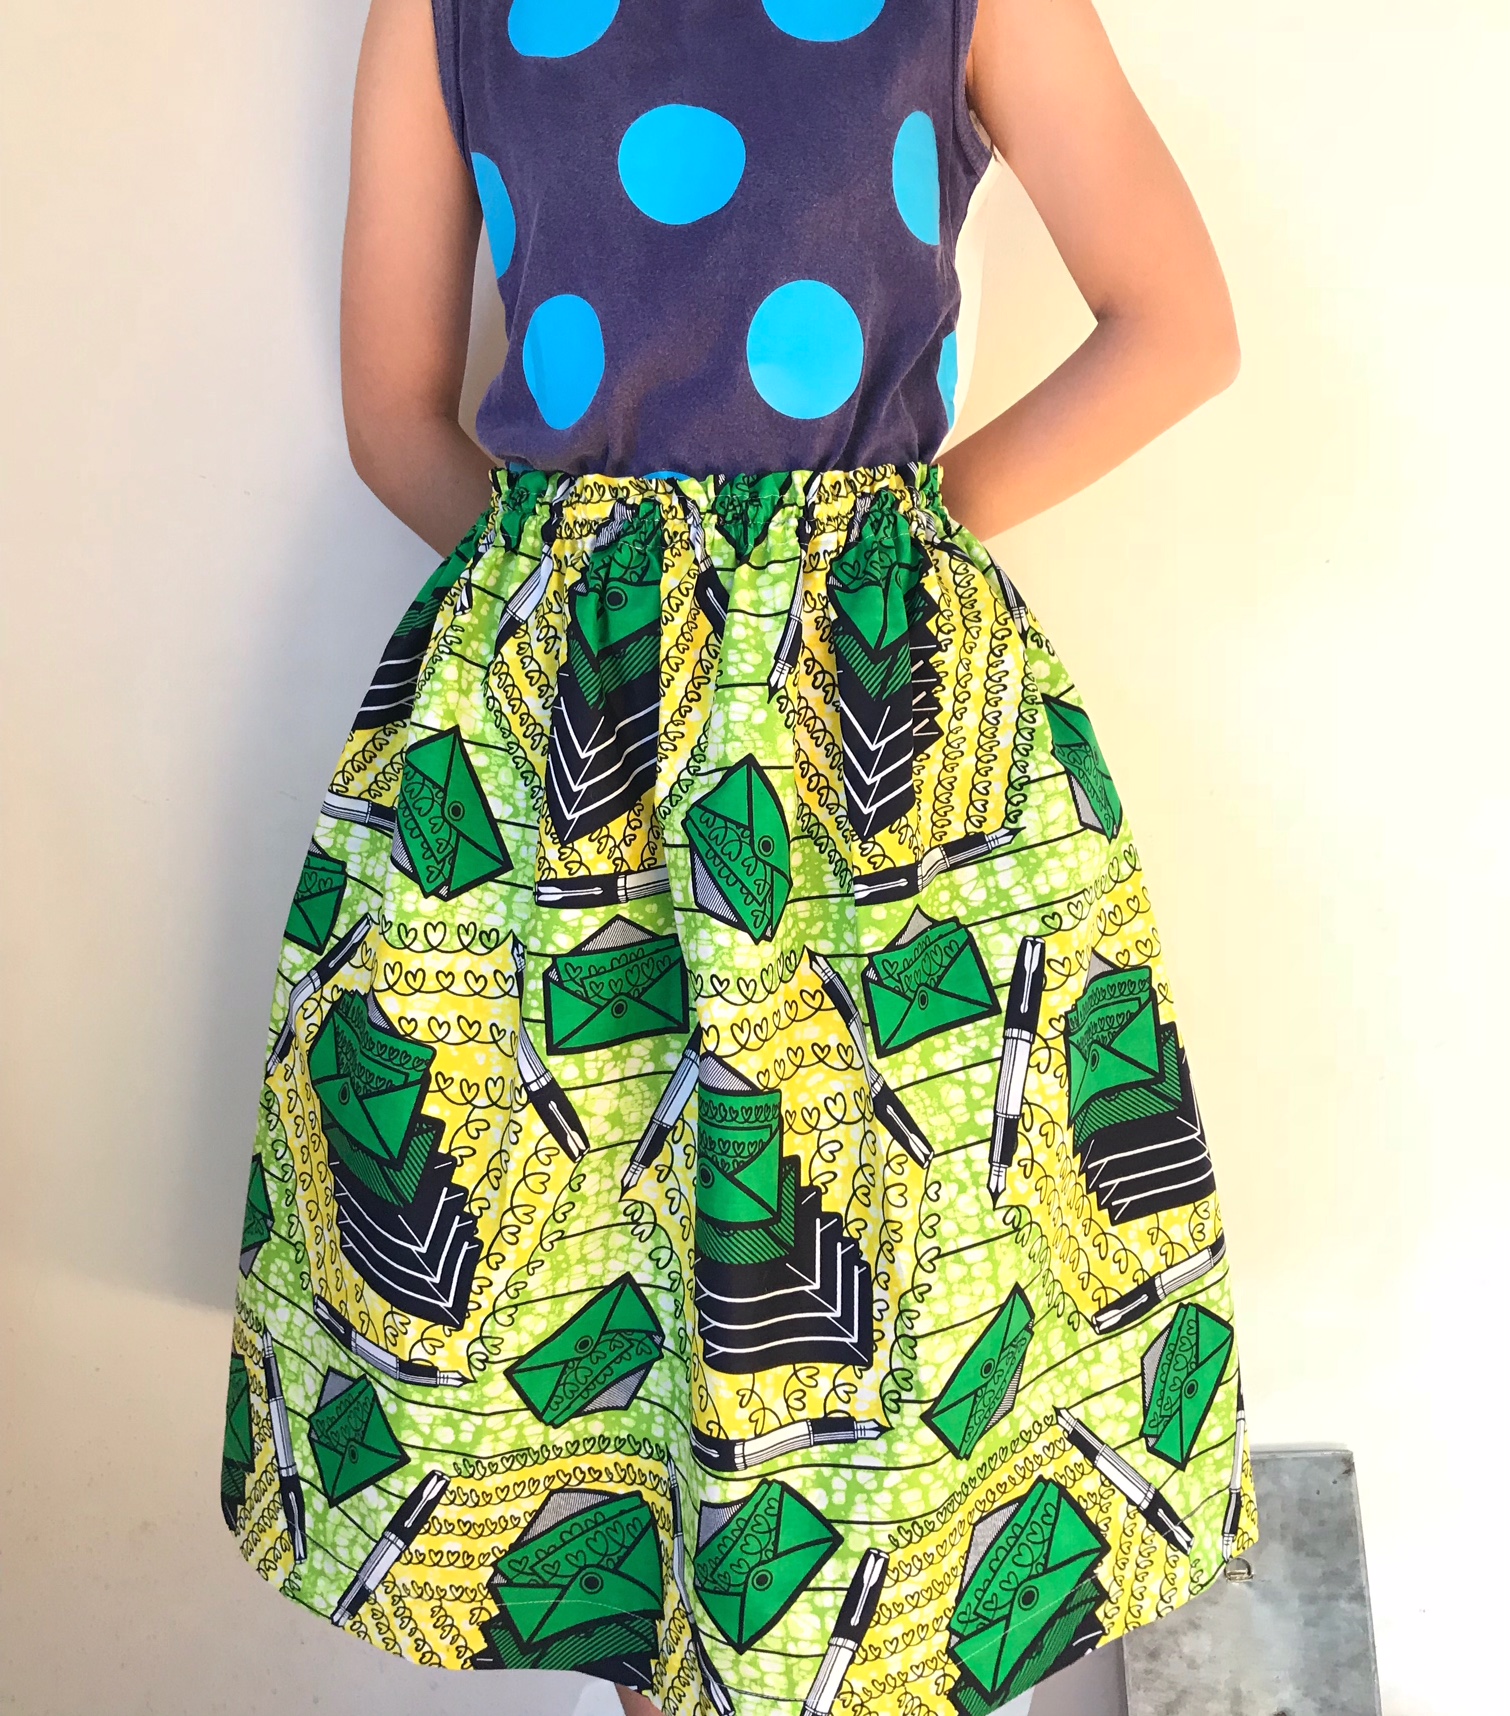 7/15sun-22sun『African textile 煌めく色との出会い2018-スカートお渡し会＆展示販売会』